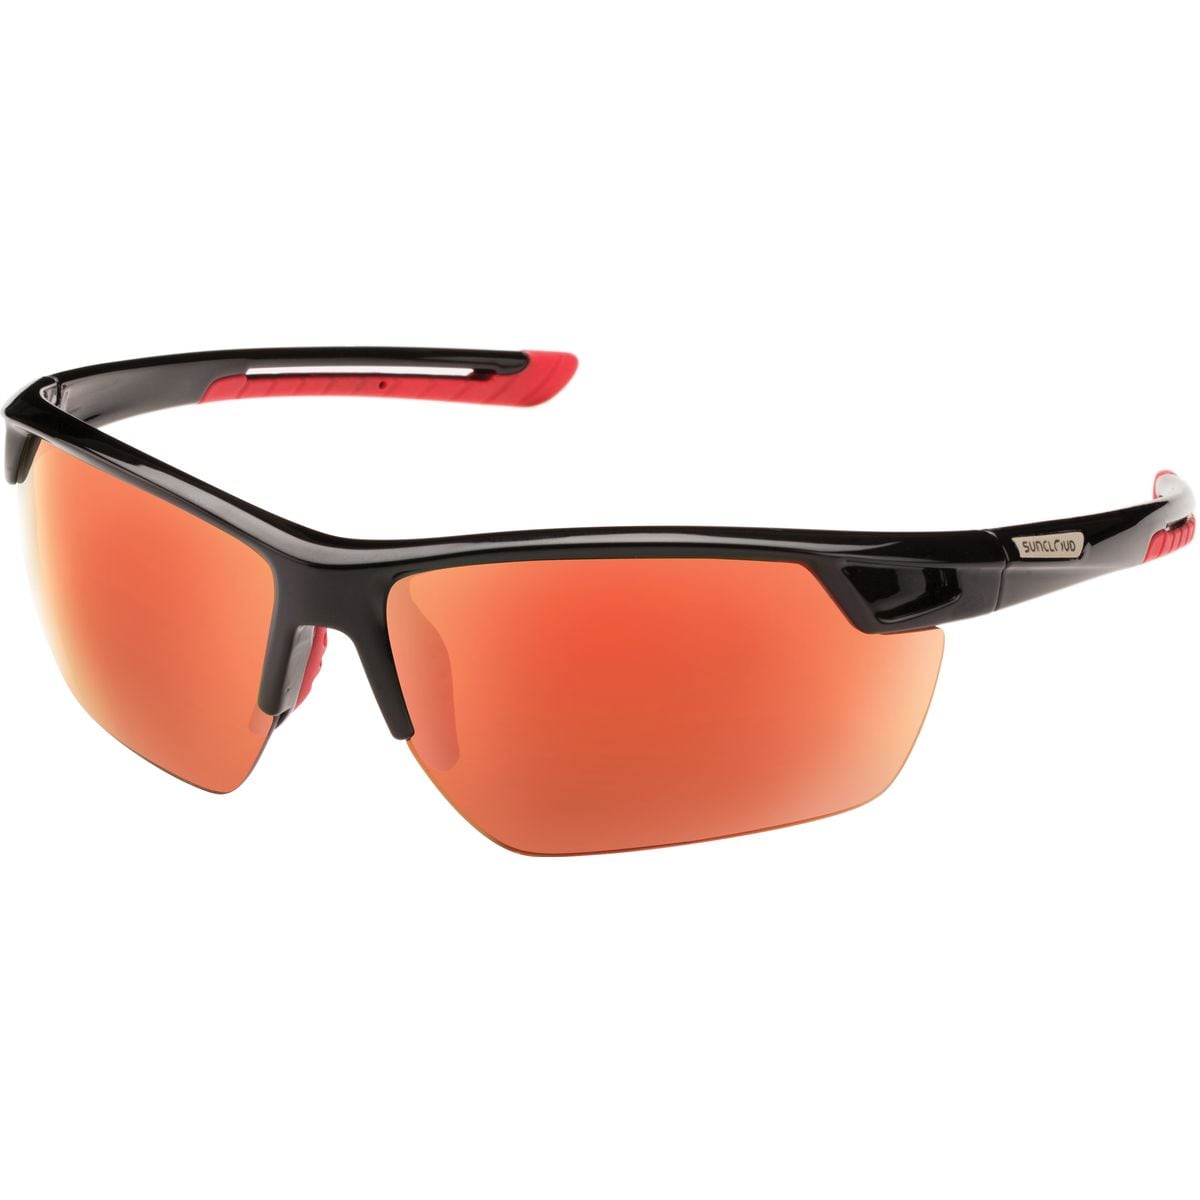 Поляризованные солнцезащитные очки contender Suncloud Polarized Optics, цвет black/red mirror